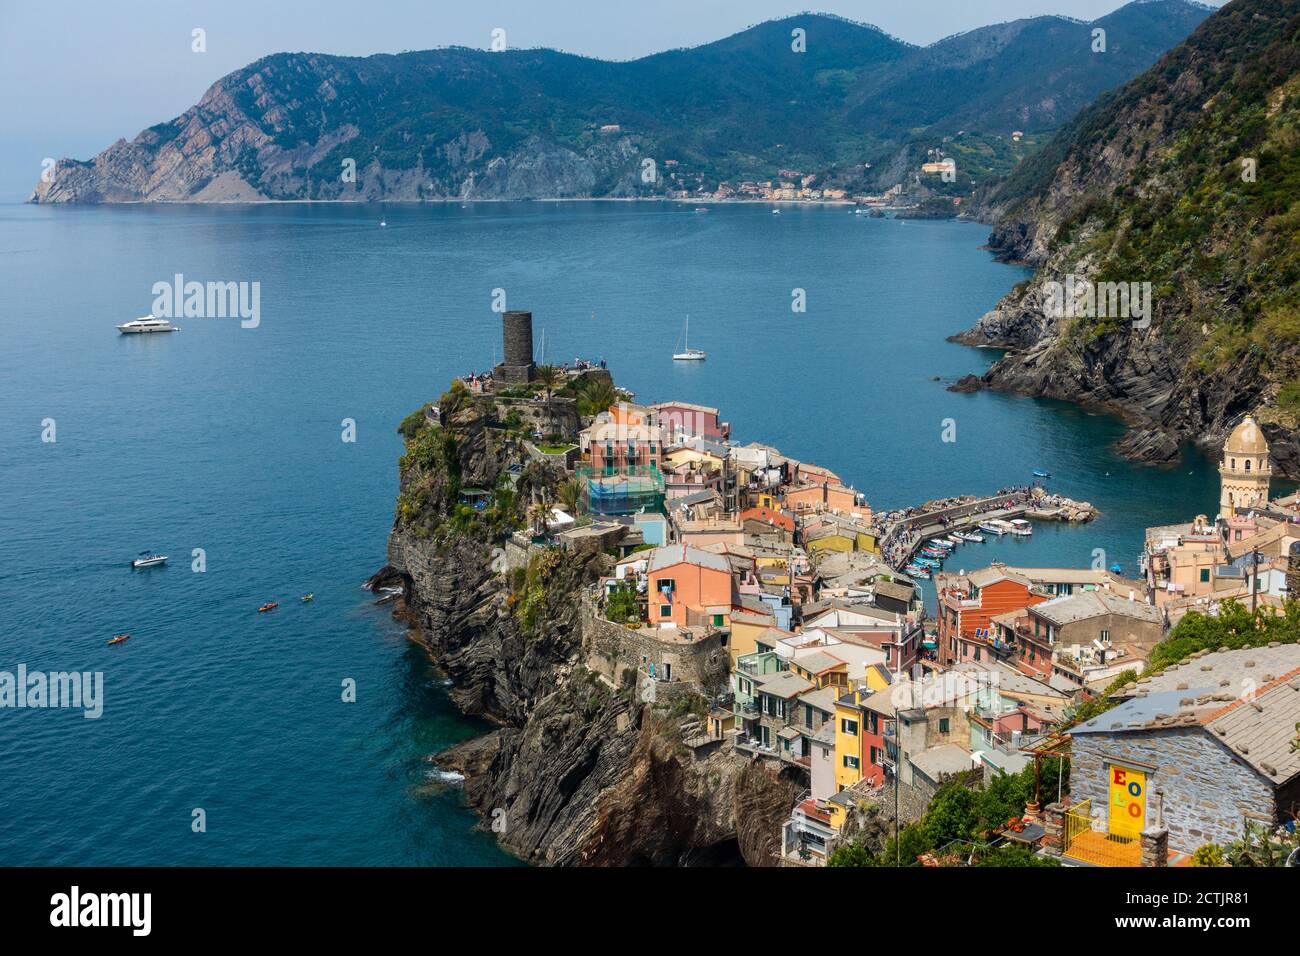 Case colorate a Vernazza, carta da parati delle cinque Terre, i luoghi più belli del mondo, Italia Foto Stock